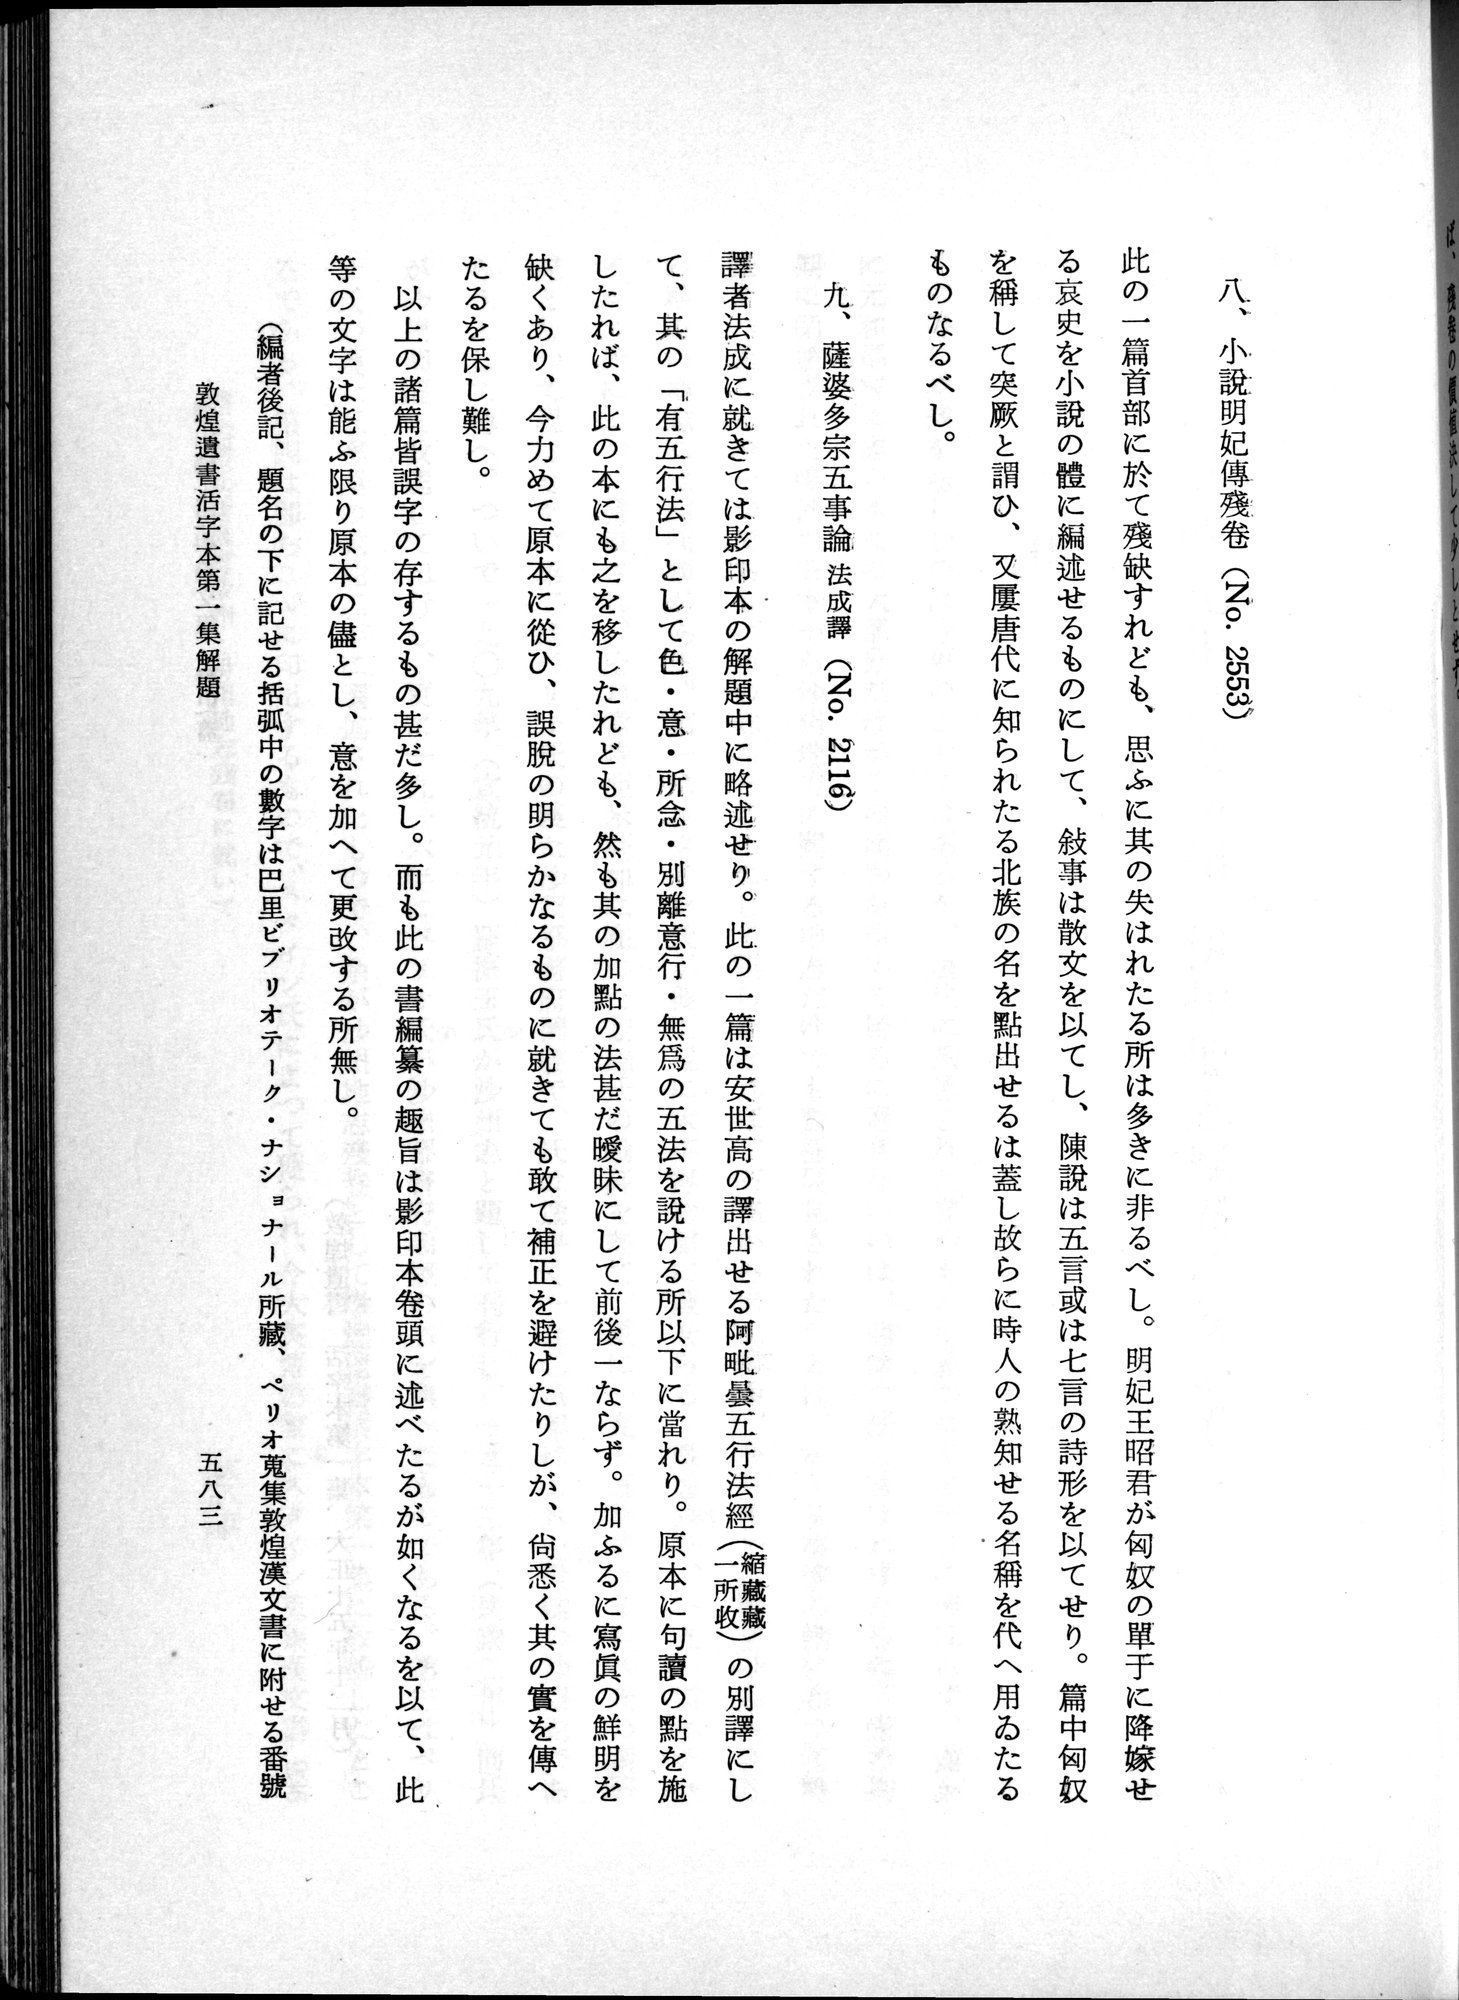 羽田博士史学論文集 : vol.1 / Page 621 (Grayscale High Resolution Image)